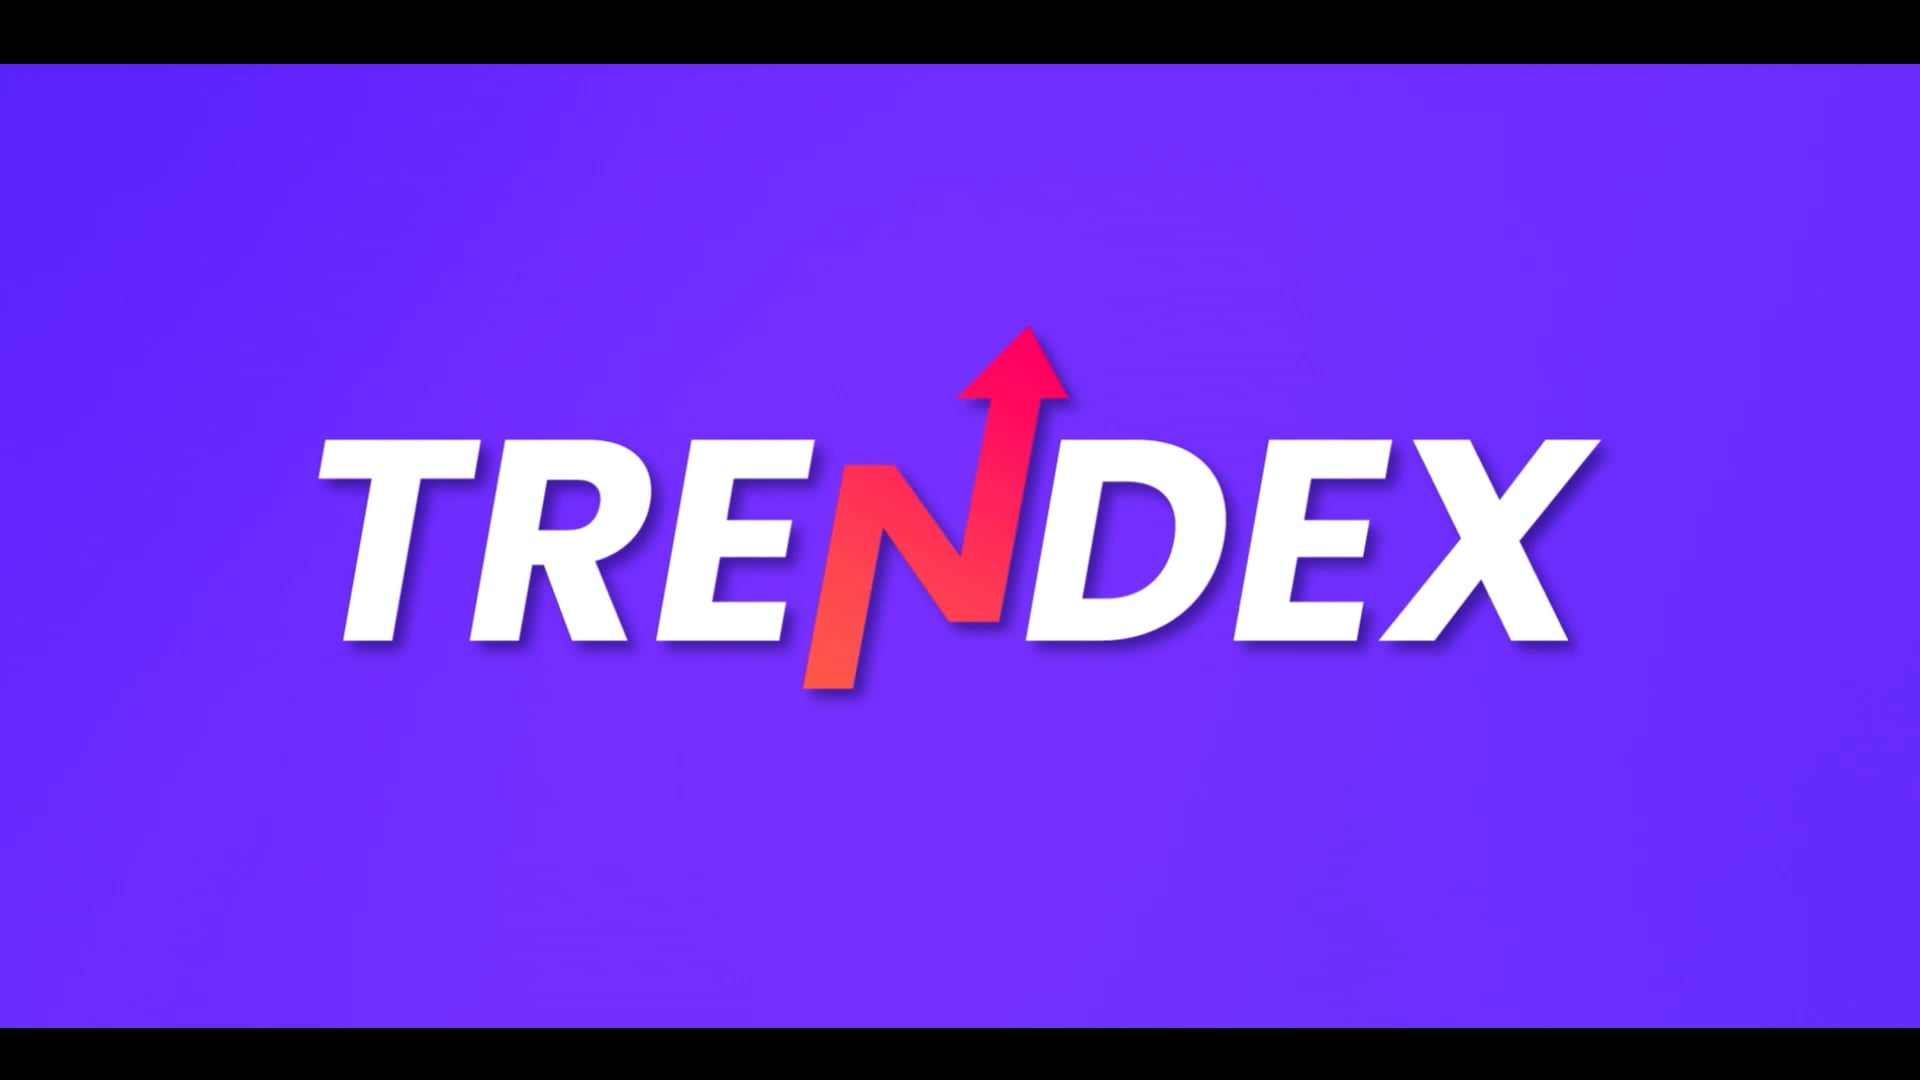 TRENDEX